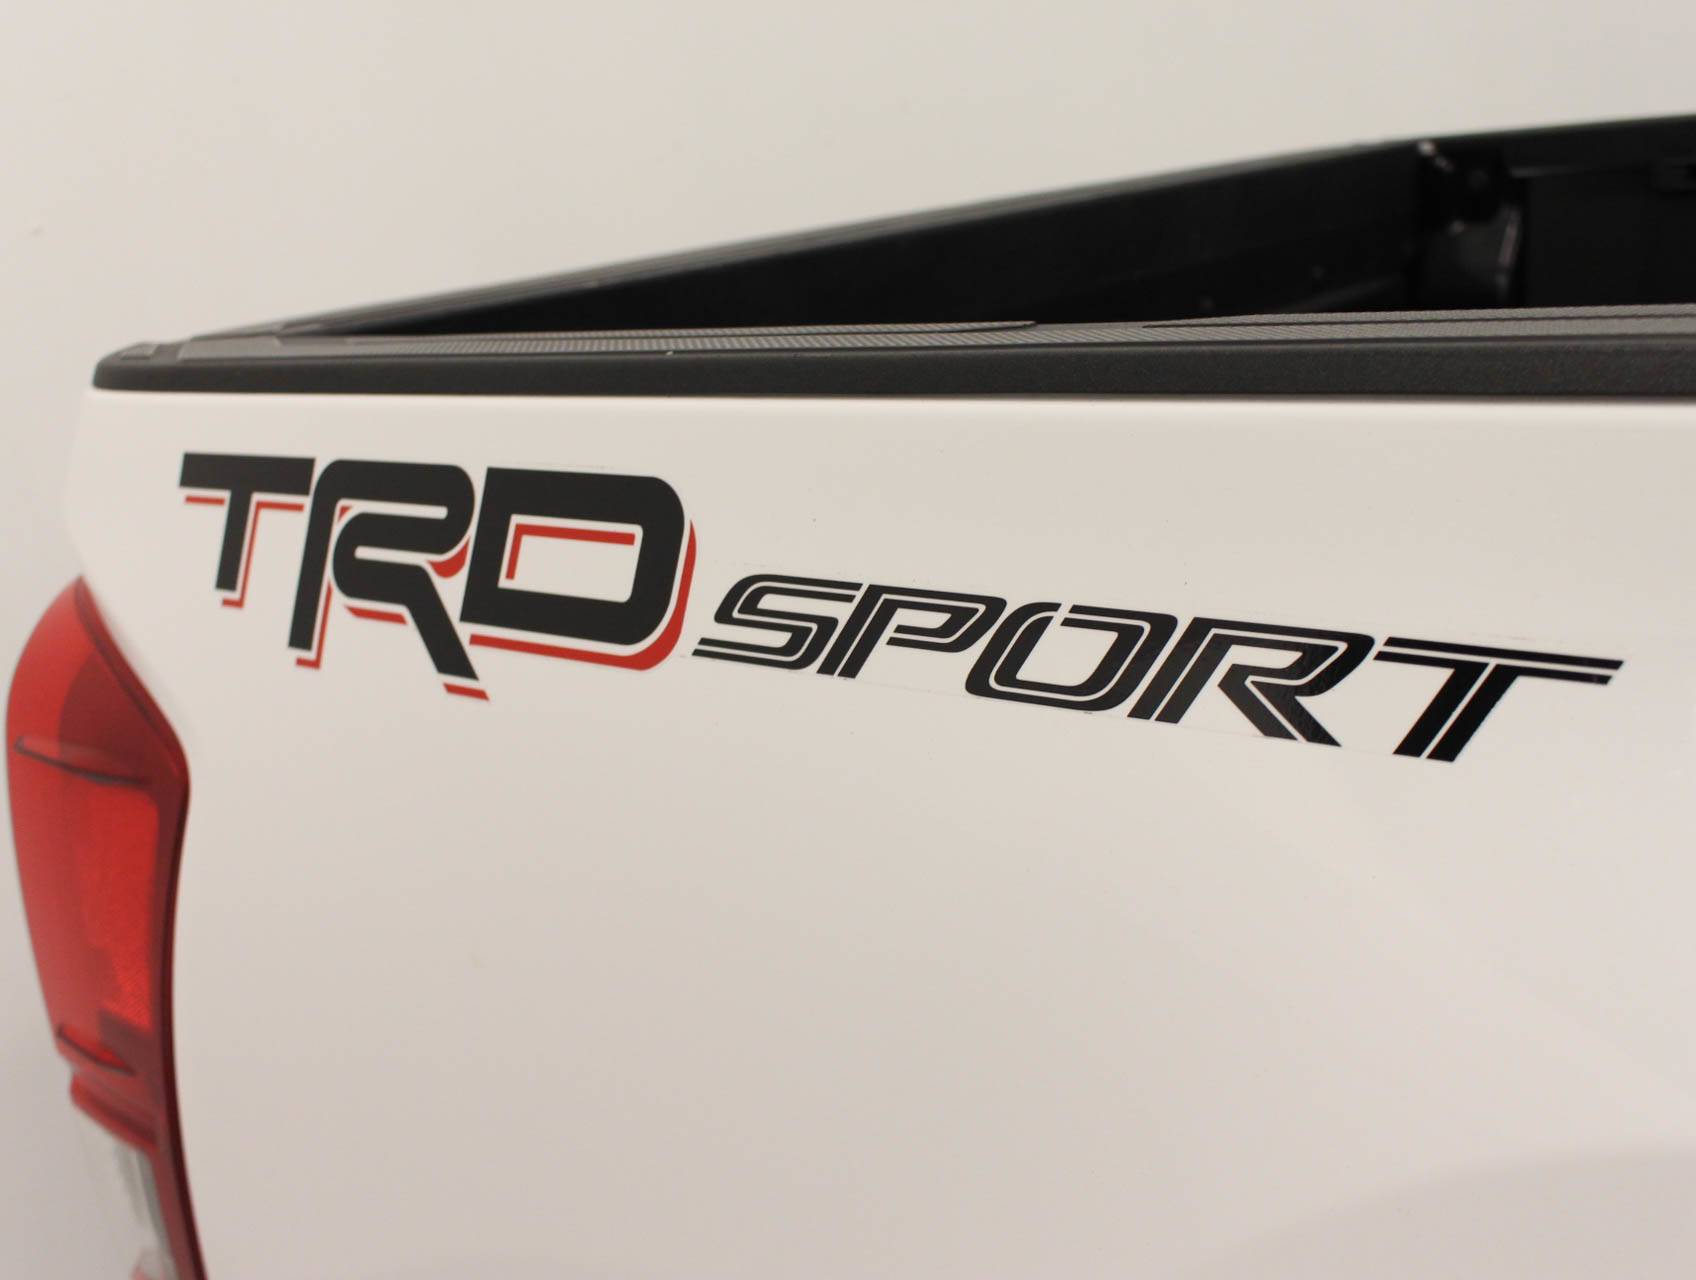 Florida Fine Cars - Used TOYOTA TACOMA 2016 MARGATE Trd Sport